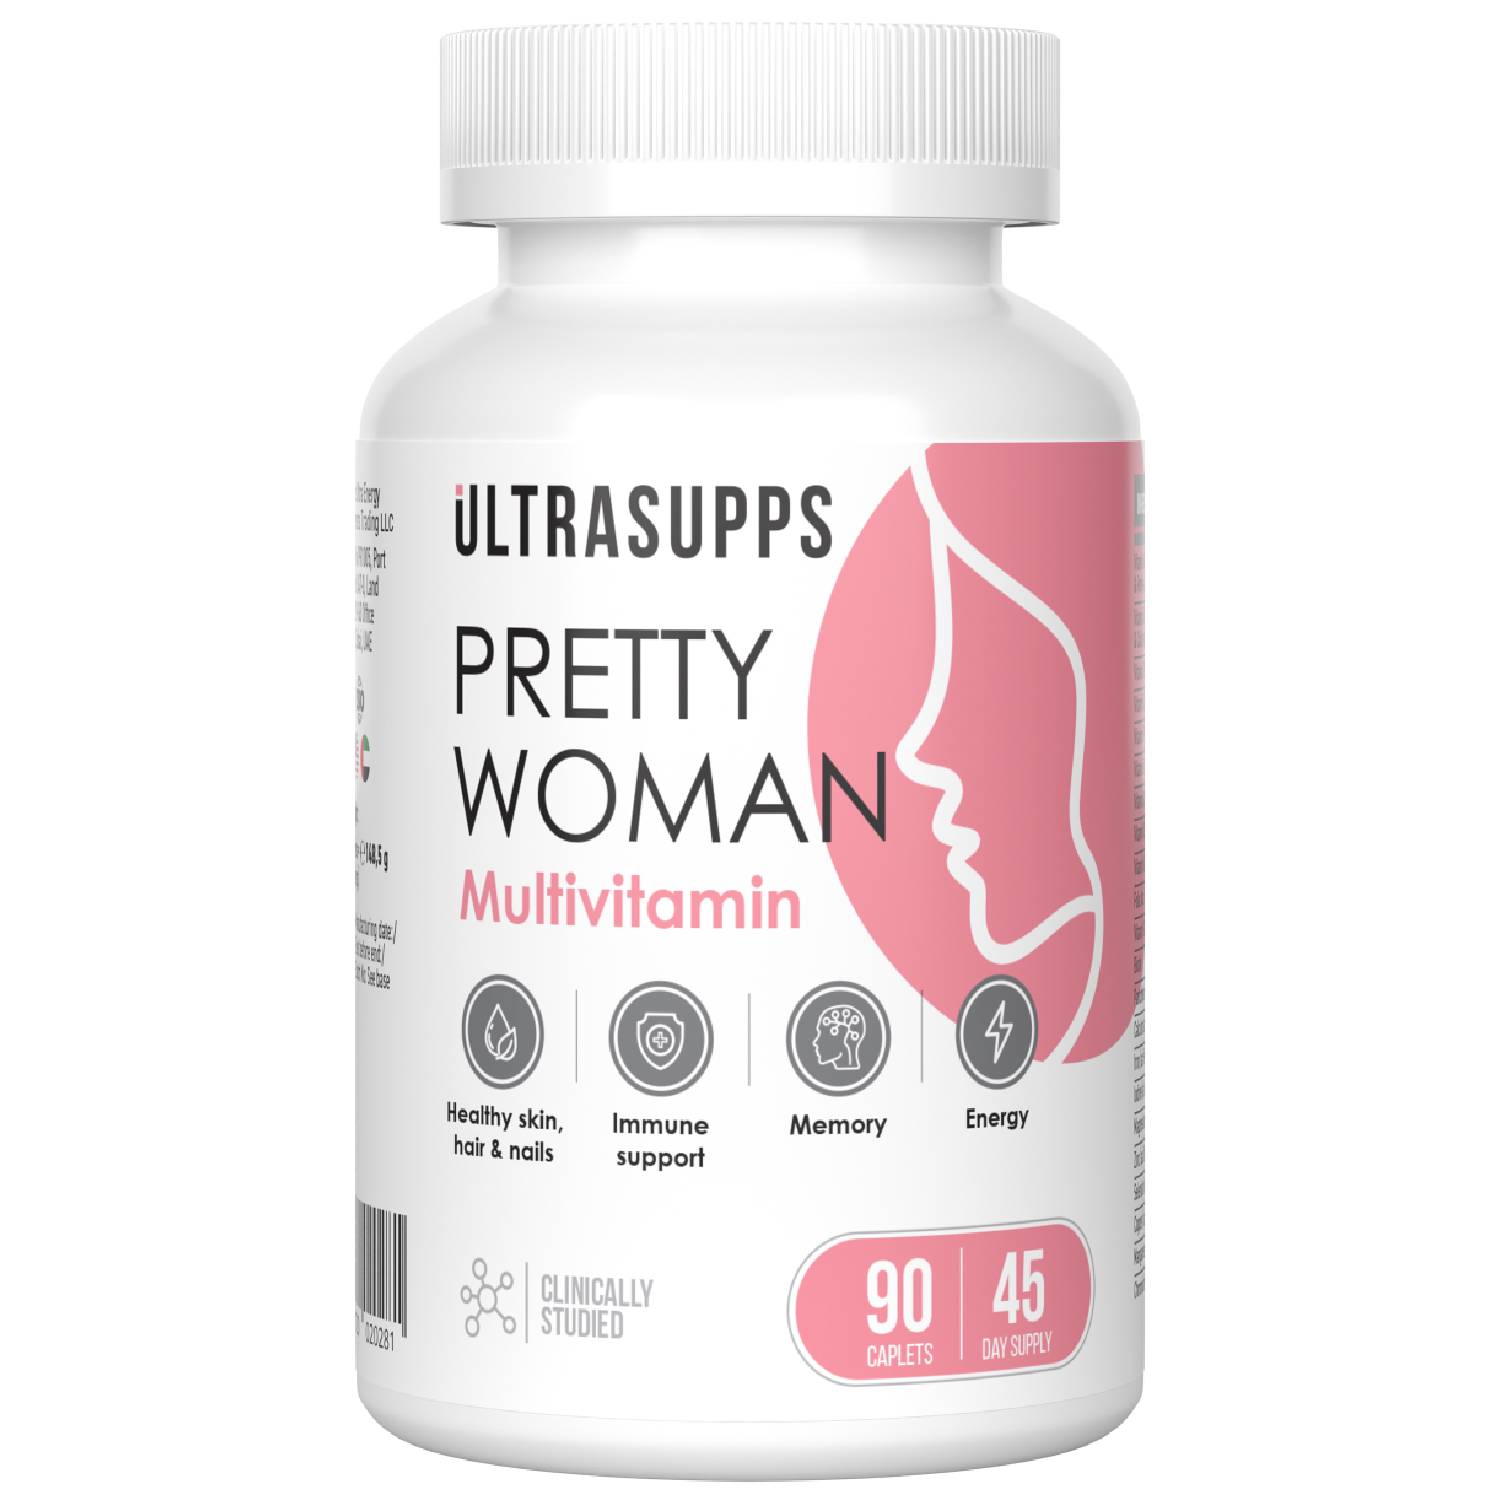 Ultrasupps Витаминно-минеральный комплекс для женщин Pretty Woman Multivitamin, 90 каплет (Ultrasupps, ) lady s formula для укрепления костной ткани таблетки 2г 60 lady s formula укрепление женского здоровья